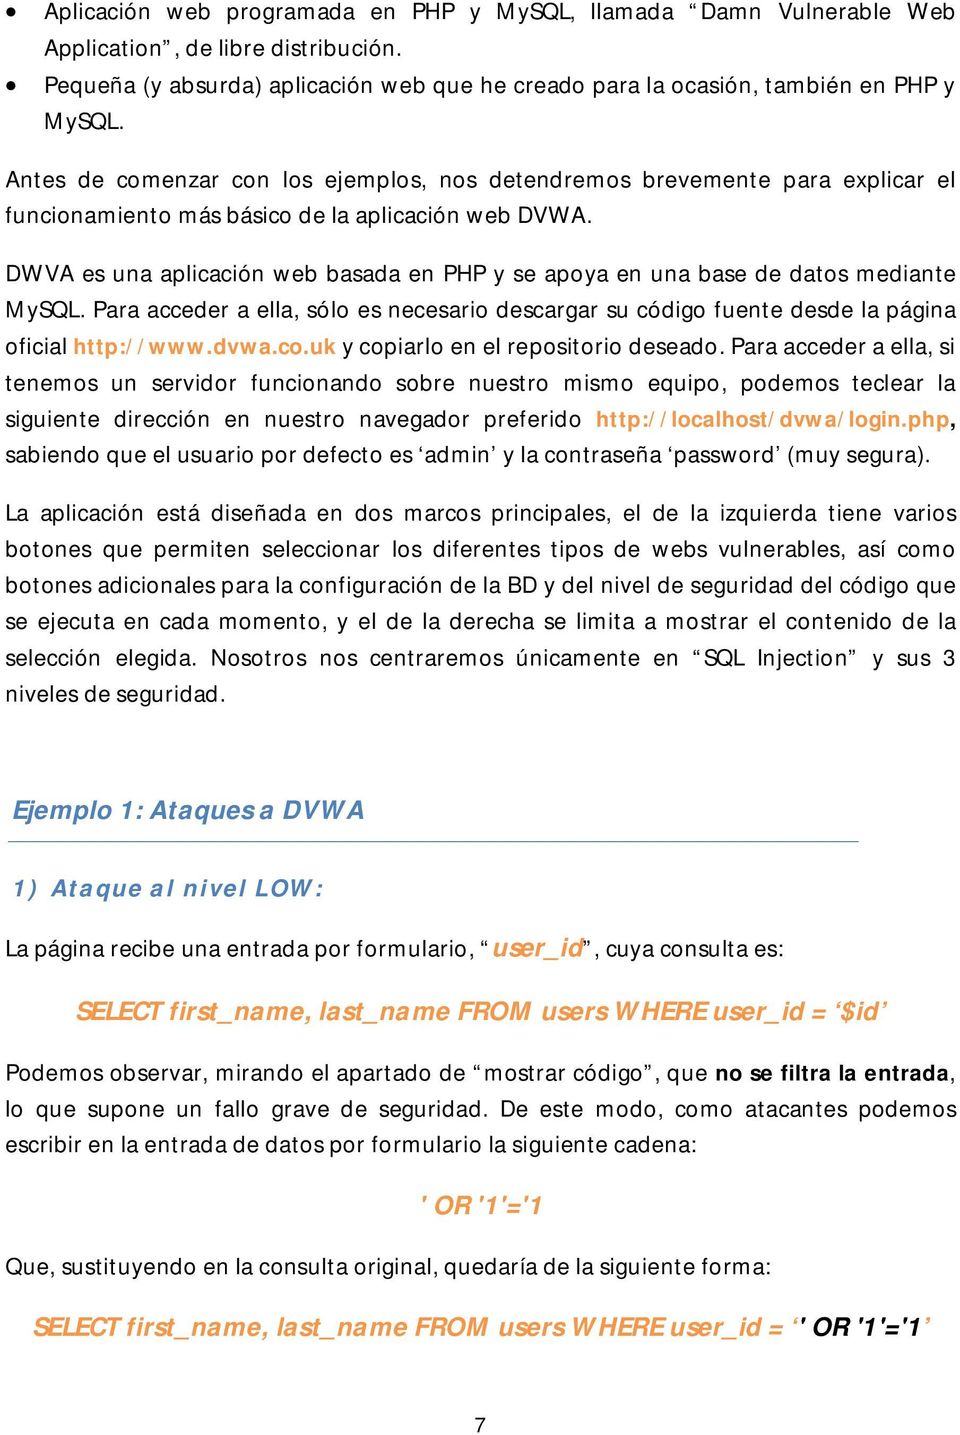 DWVA es una aplicación web basada en PHP y se apoya en una base de datos mediante MySQL. Para acceder a ella, sólo es necesario descargar su código fuente desde la página oficial http://www.dvwa.co.